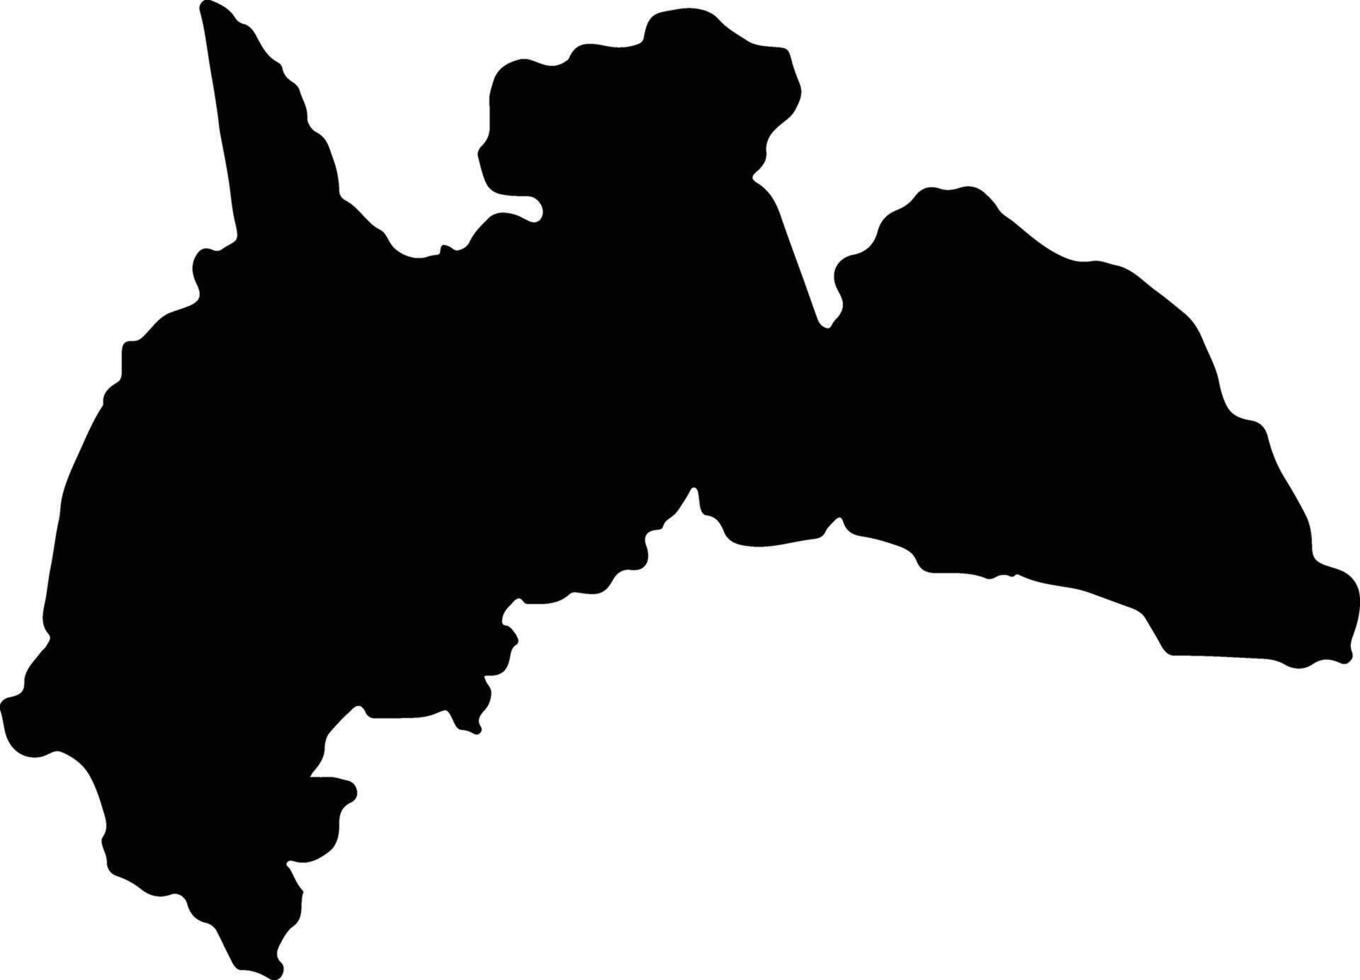 Brong Ahafo Ghana silhouette map vector